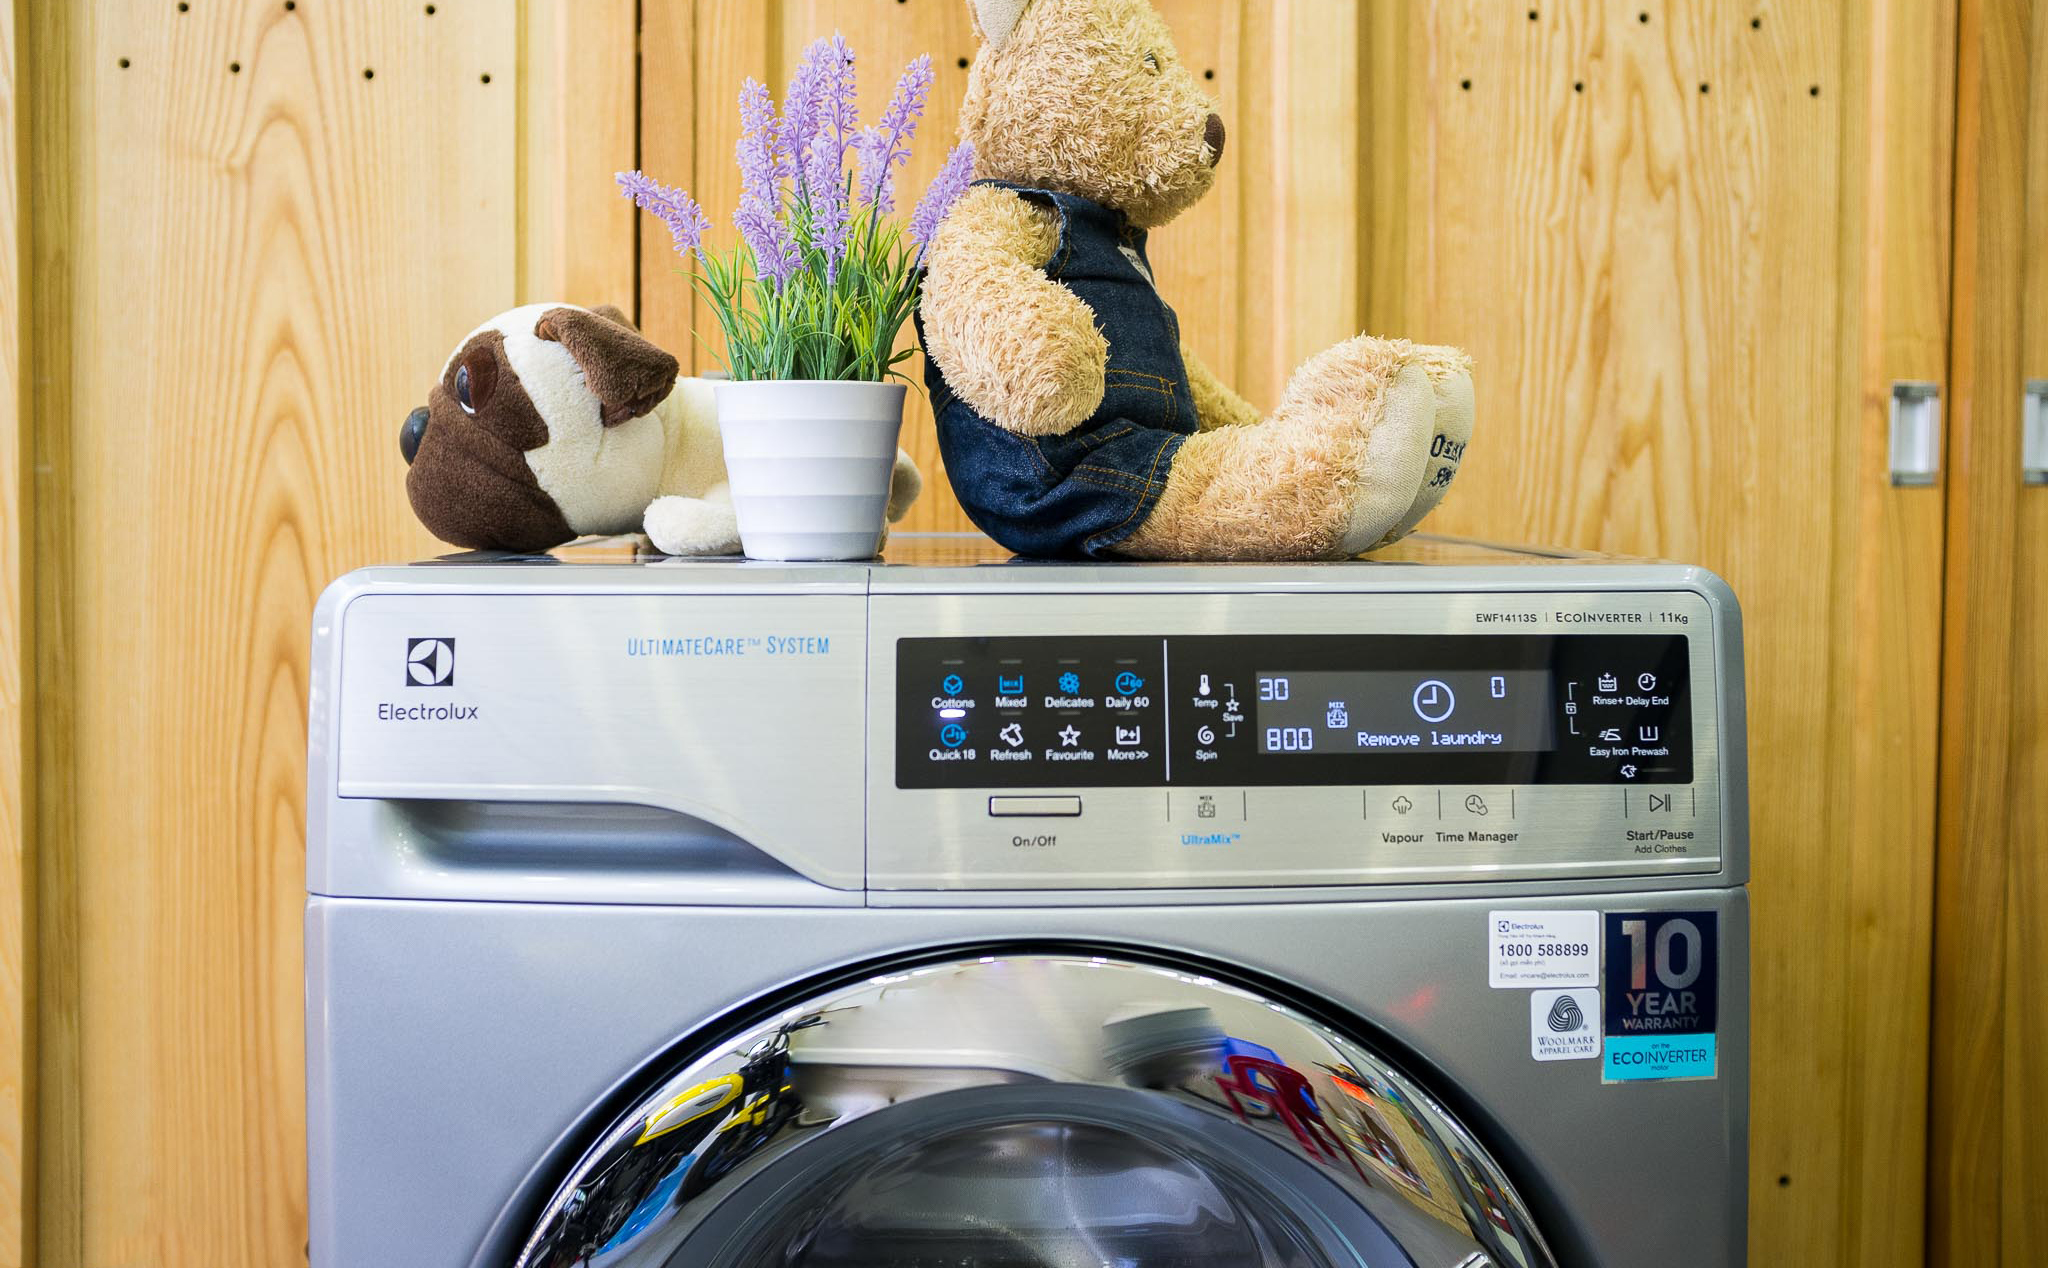 [Mời chia sẻ] Máy giặt: nên dùng bột giặt hay nước giặt?